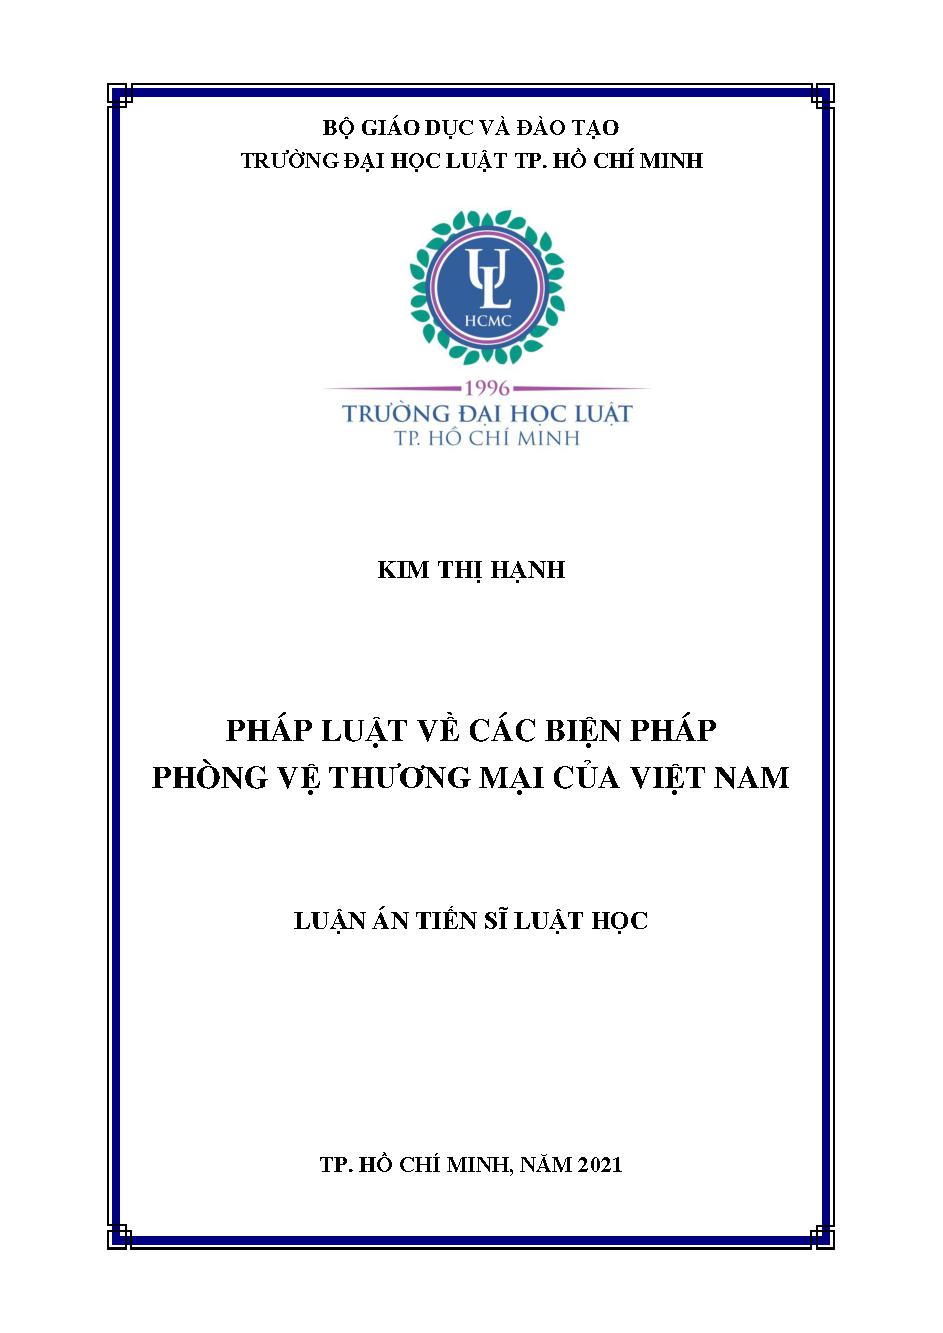 Pháp luật về các biện pháp phòng vệ thương mại của Việt Nam